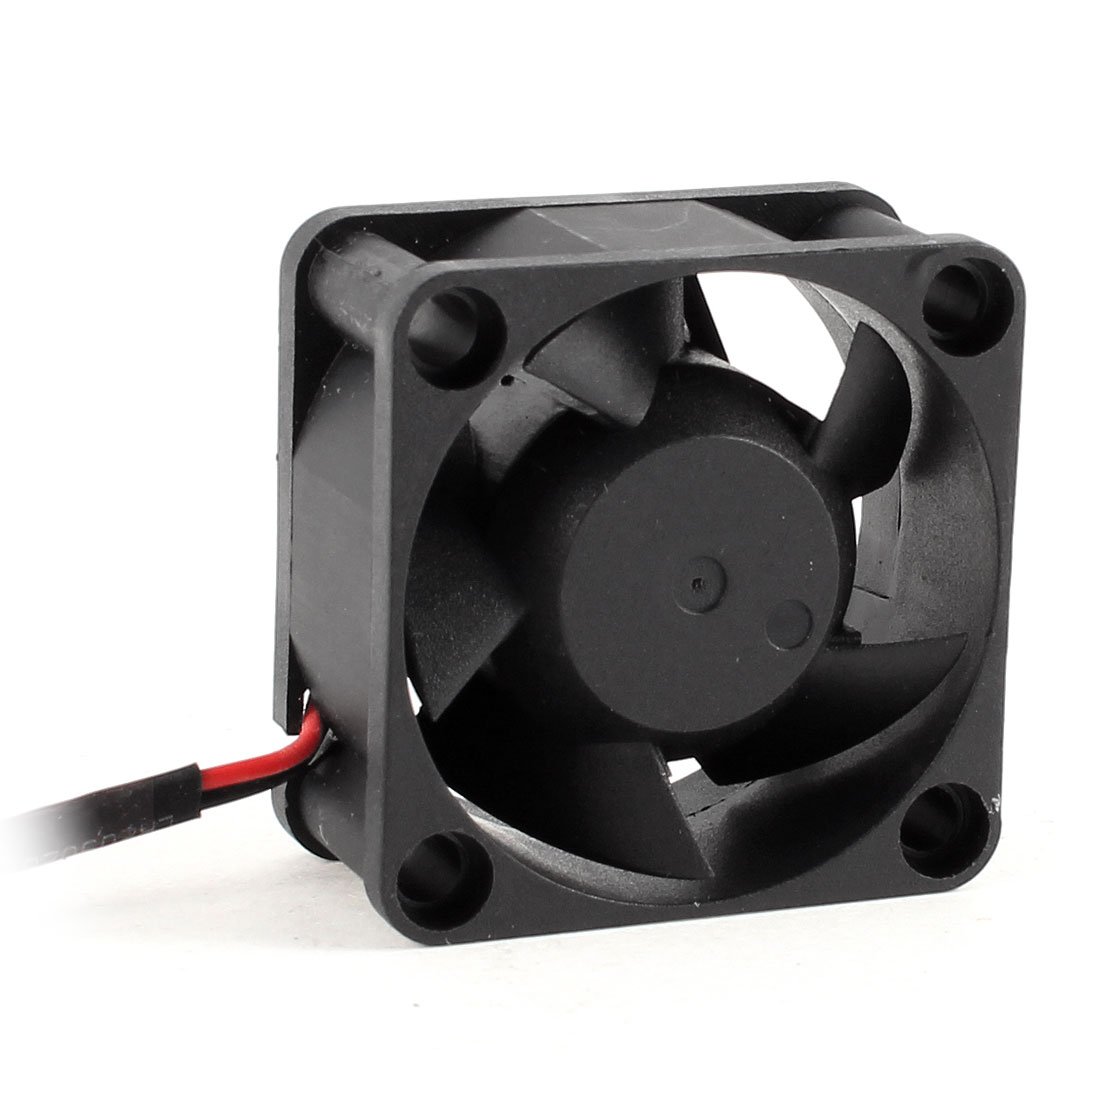 PROMOTION! Hot 40mm DC 5V 6.42CFM Chipset Cooling Fan Black for Computer CPU Cooler